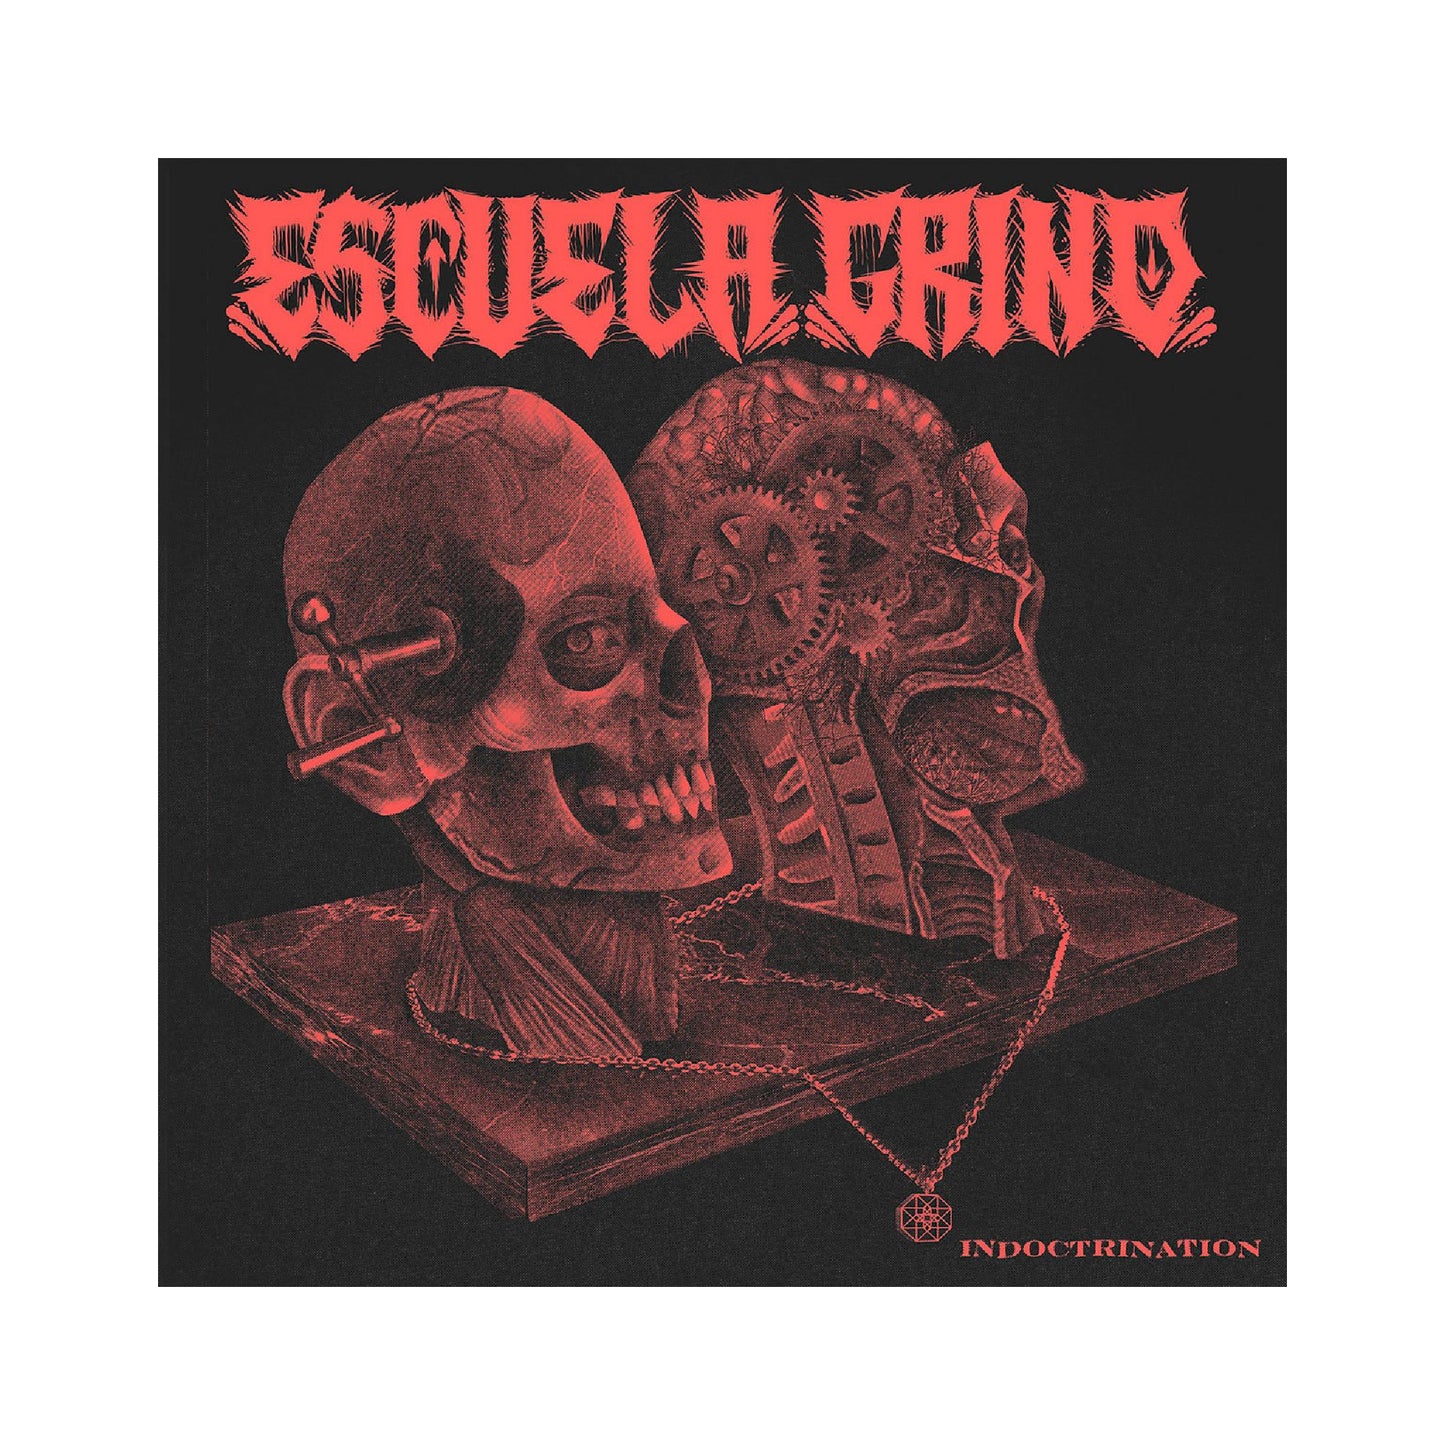 Escuela Grind - Indoctrination LP 12" (color vinyl)